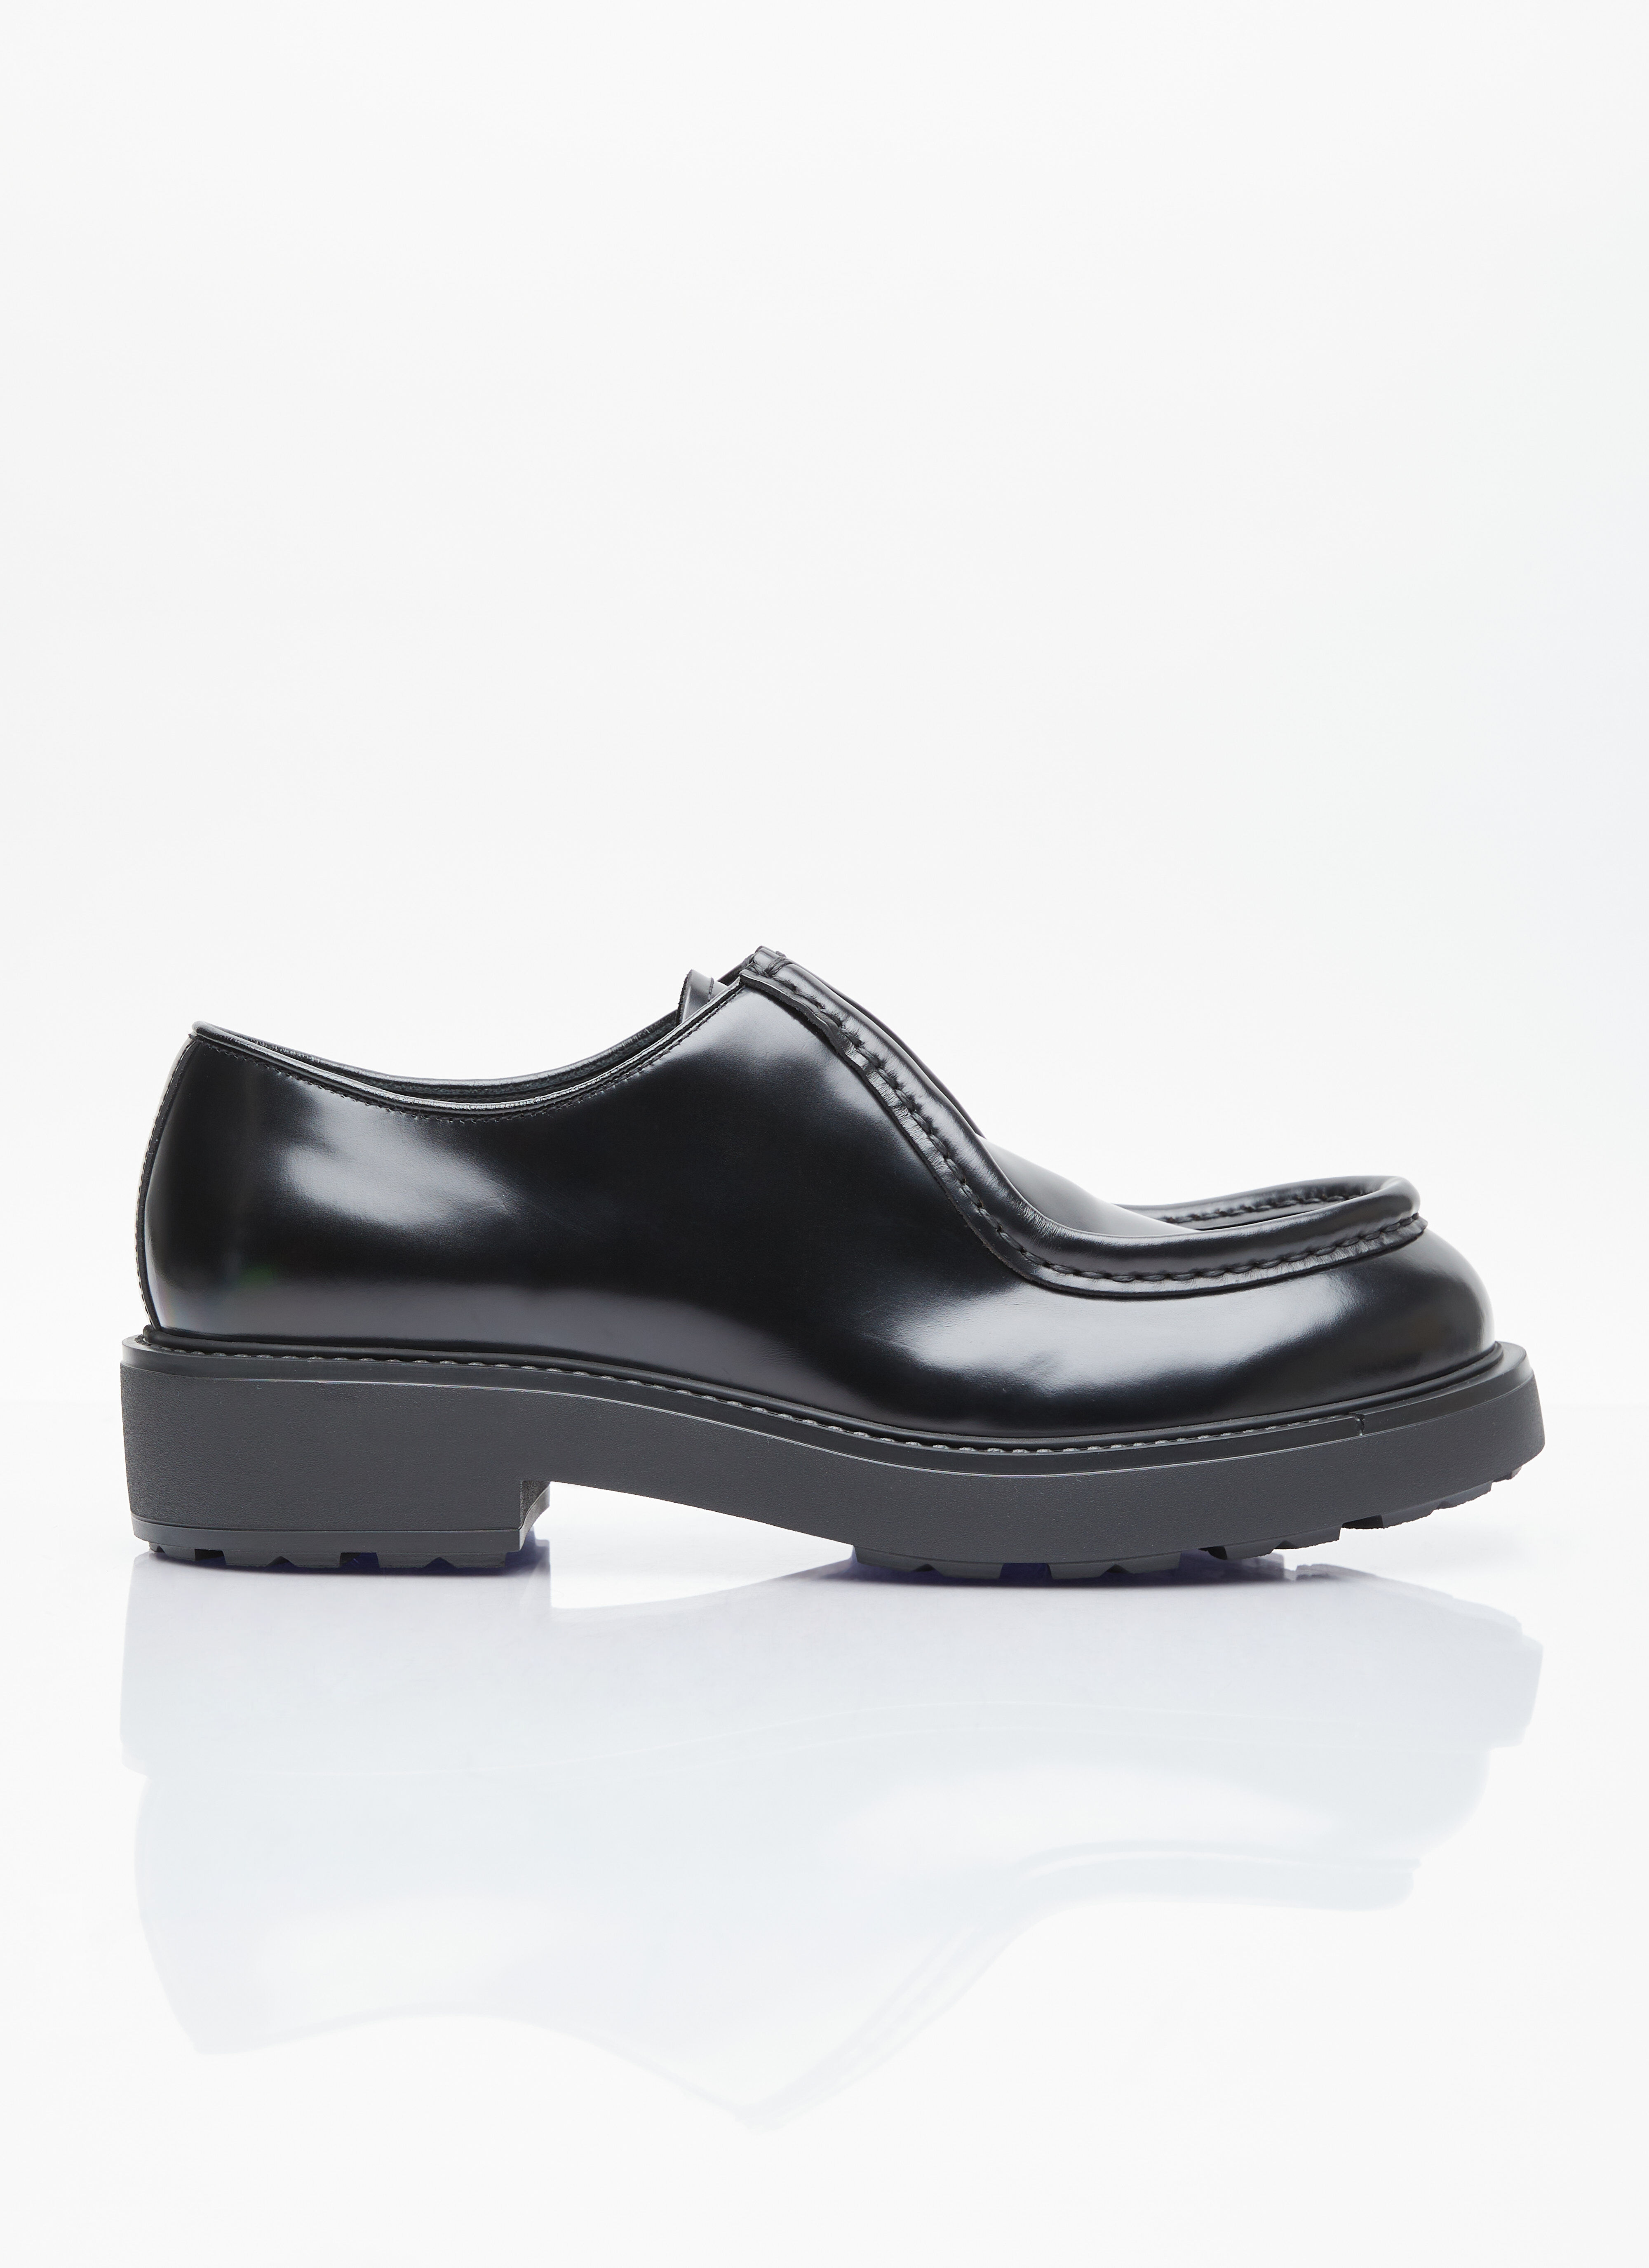 Comme des Garçons Homme Plus Leather Lace-Up Shoes Black hpl0156006